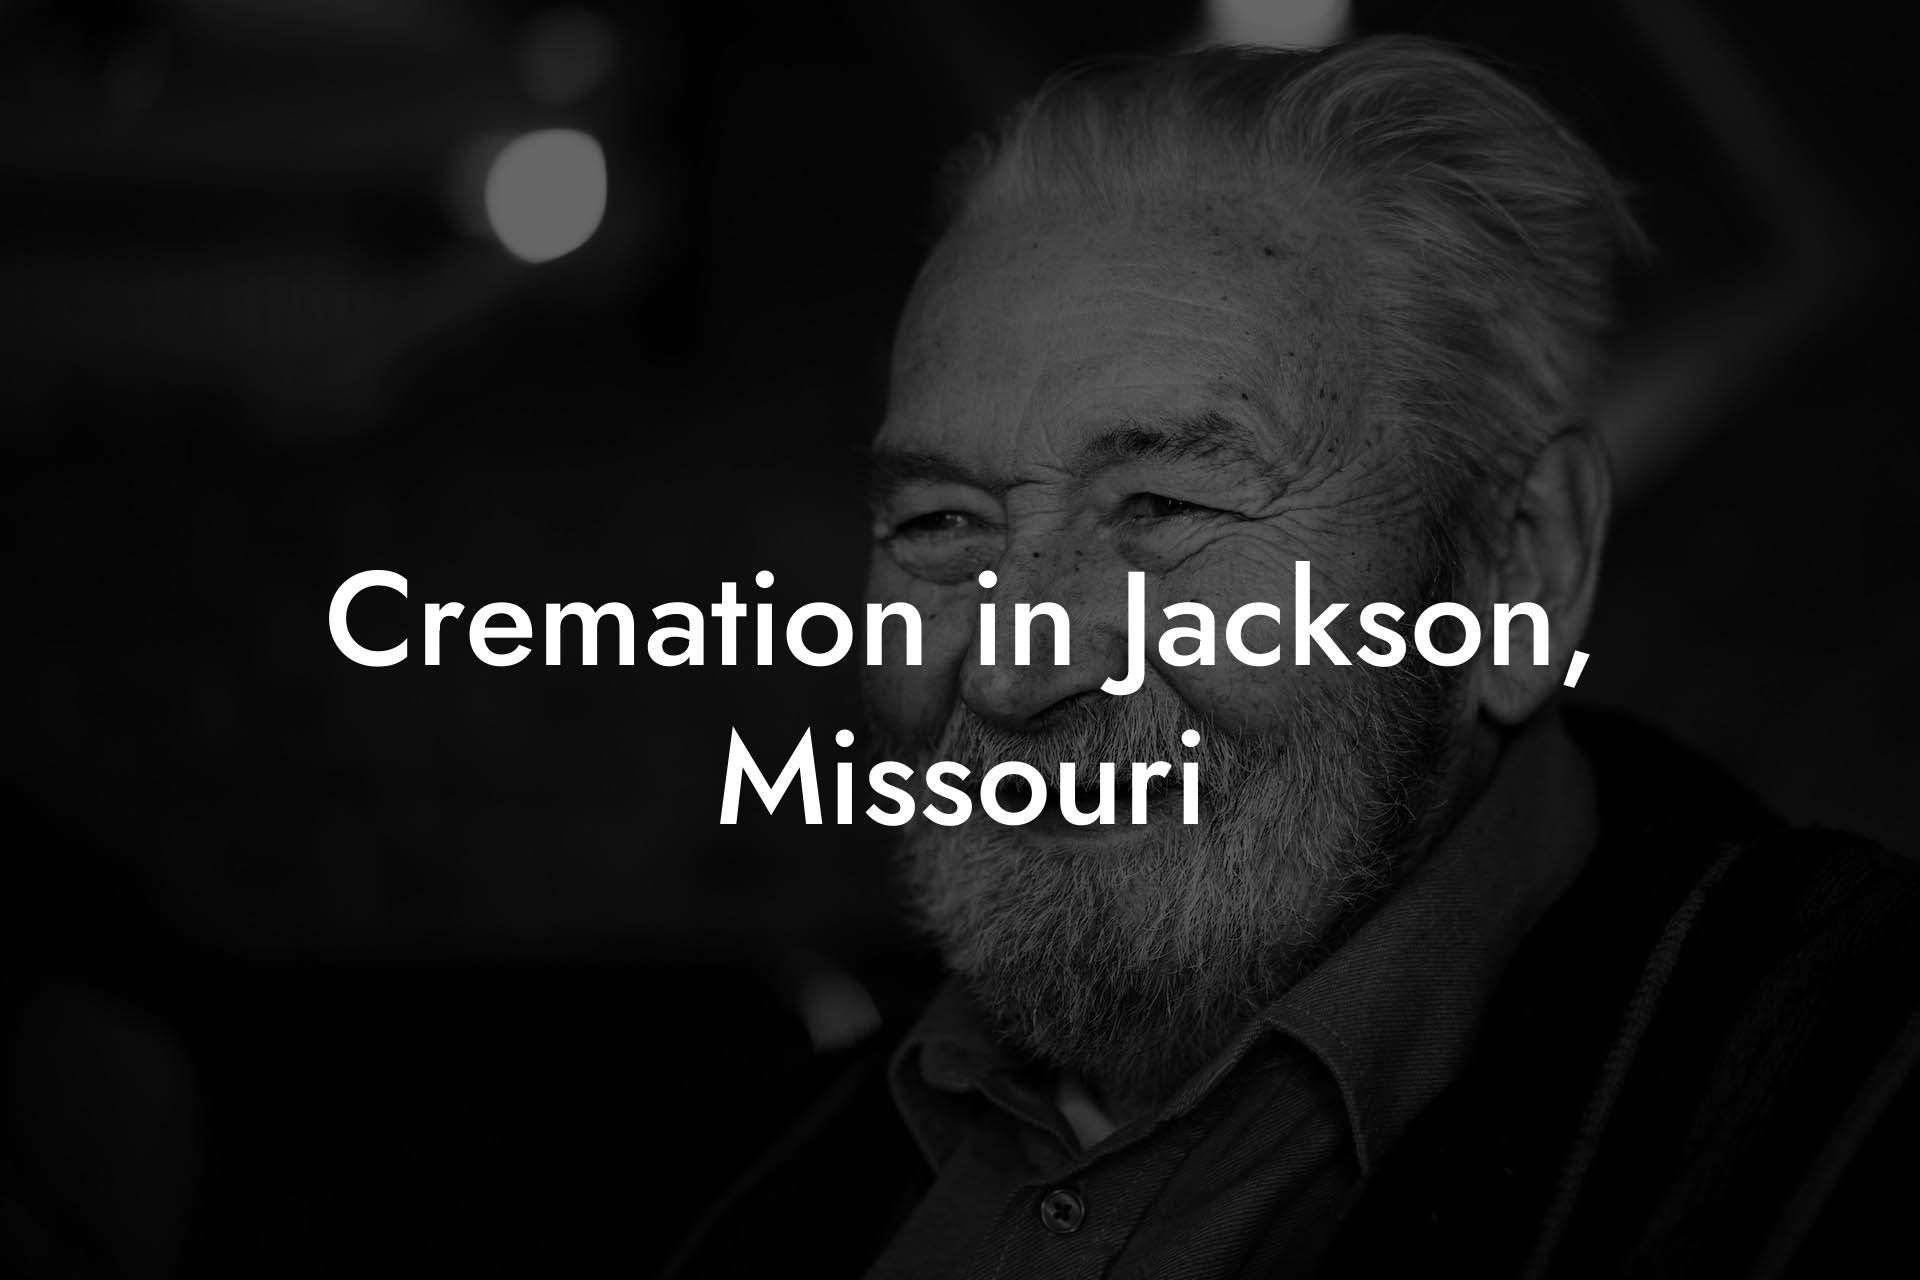 Cremation in Jackson, Missouri